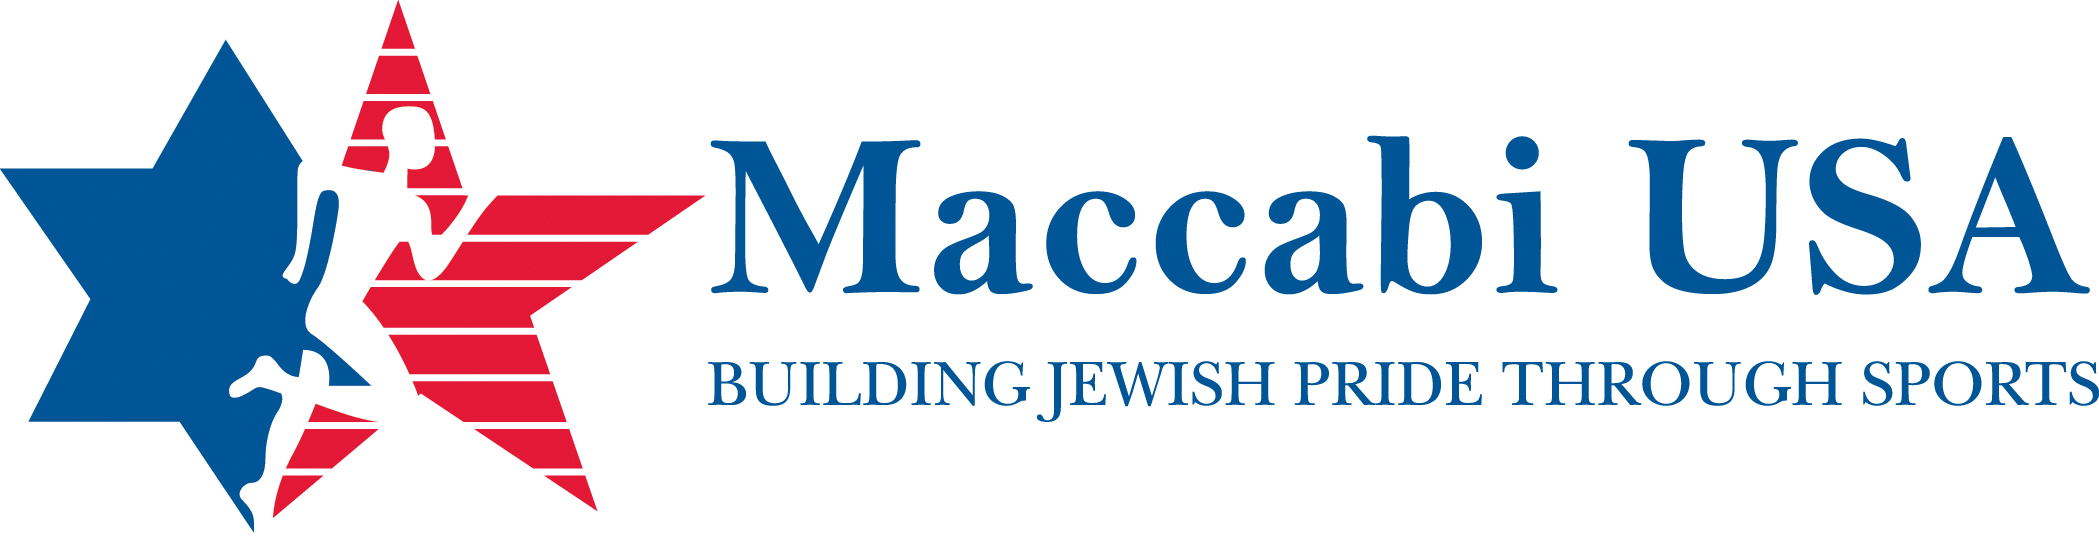 Maccabi USA logo